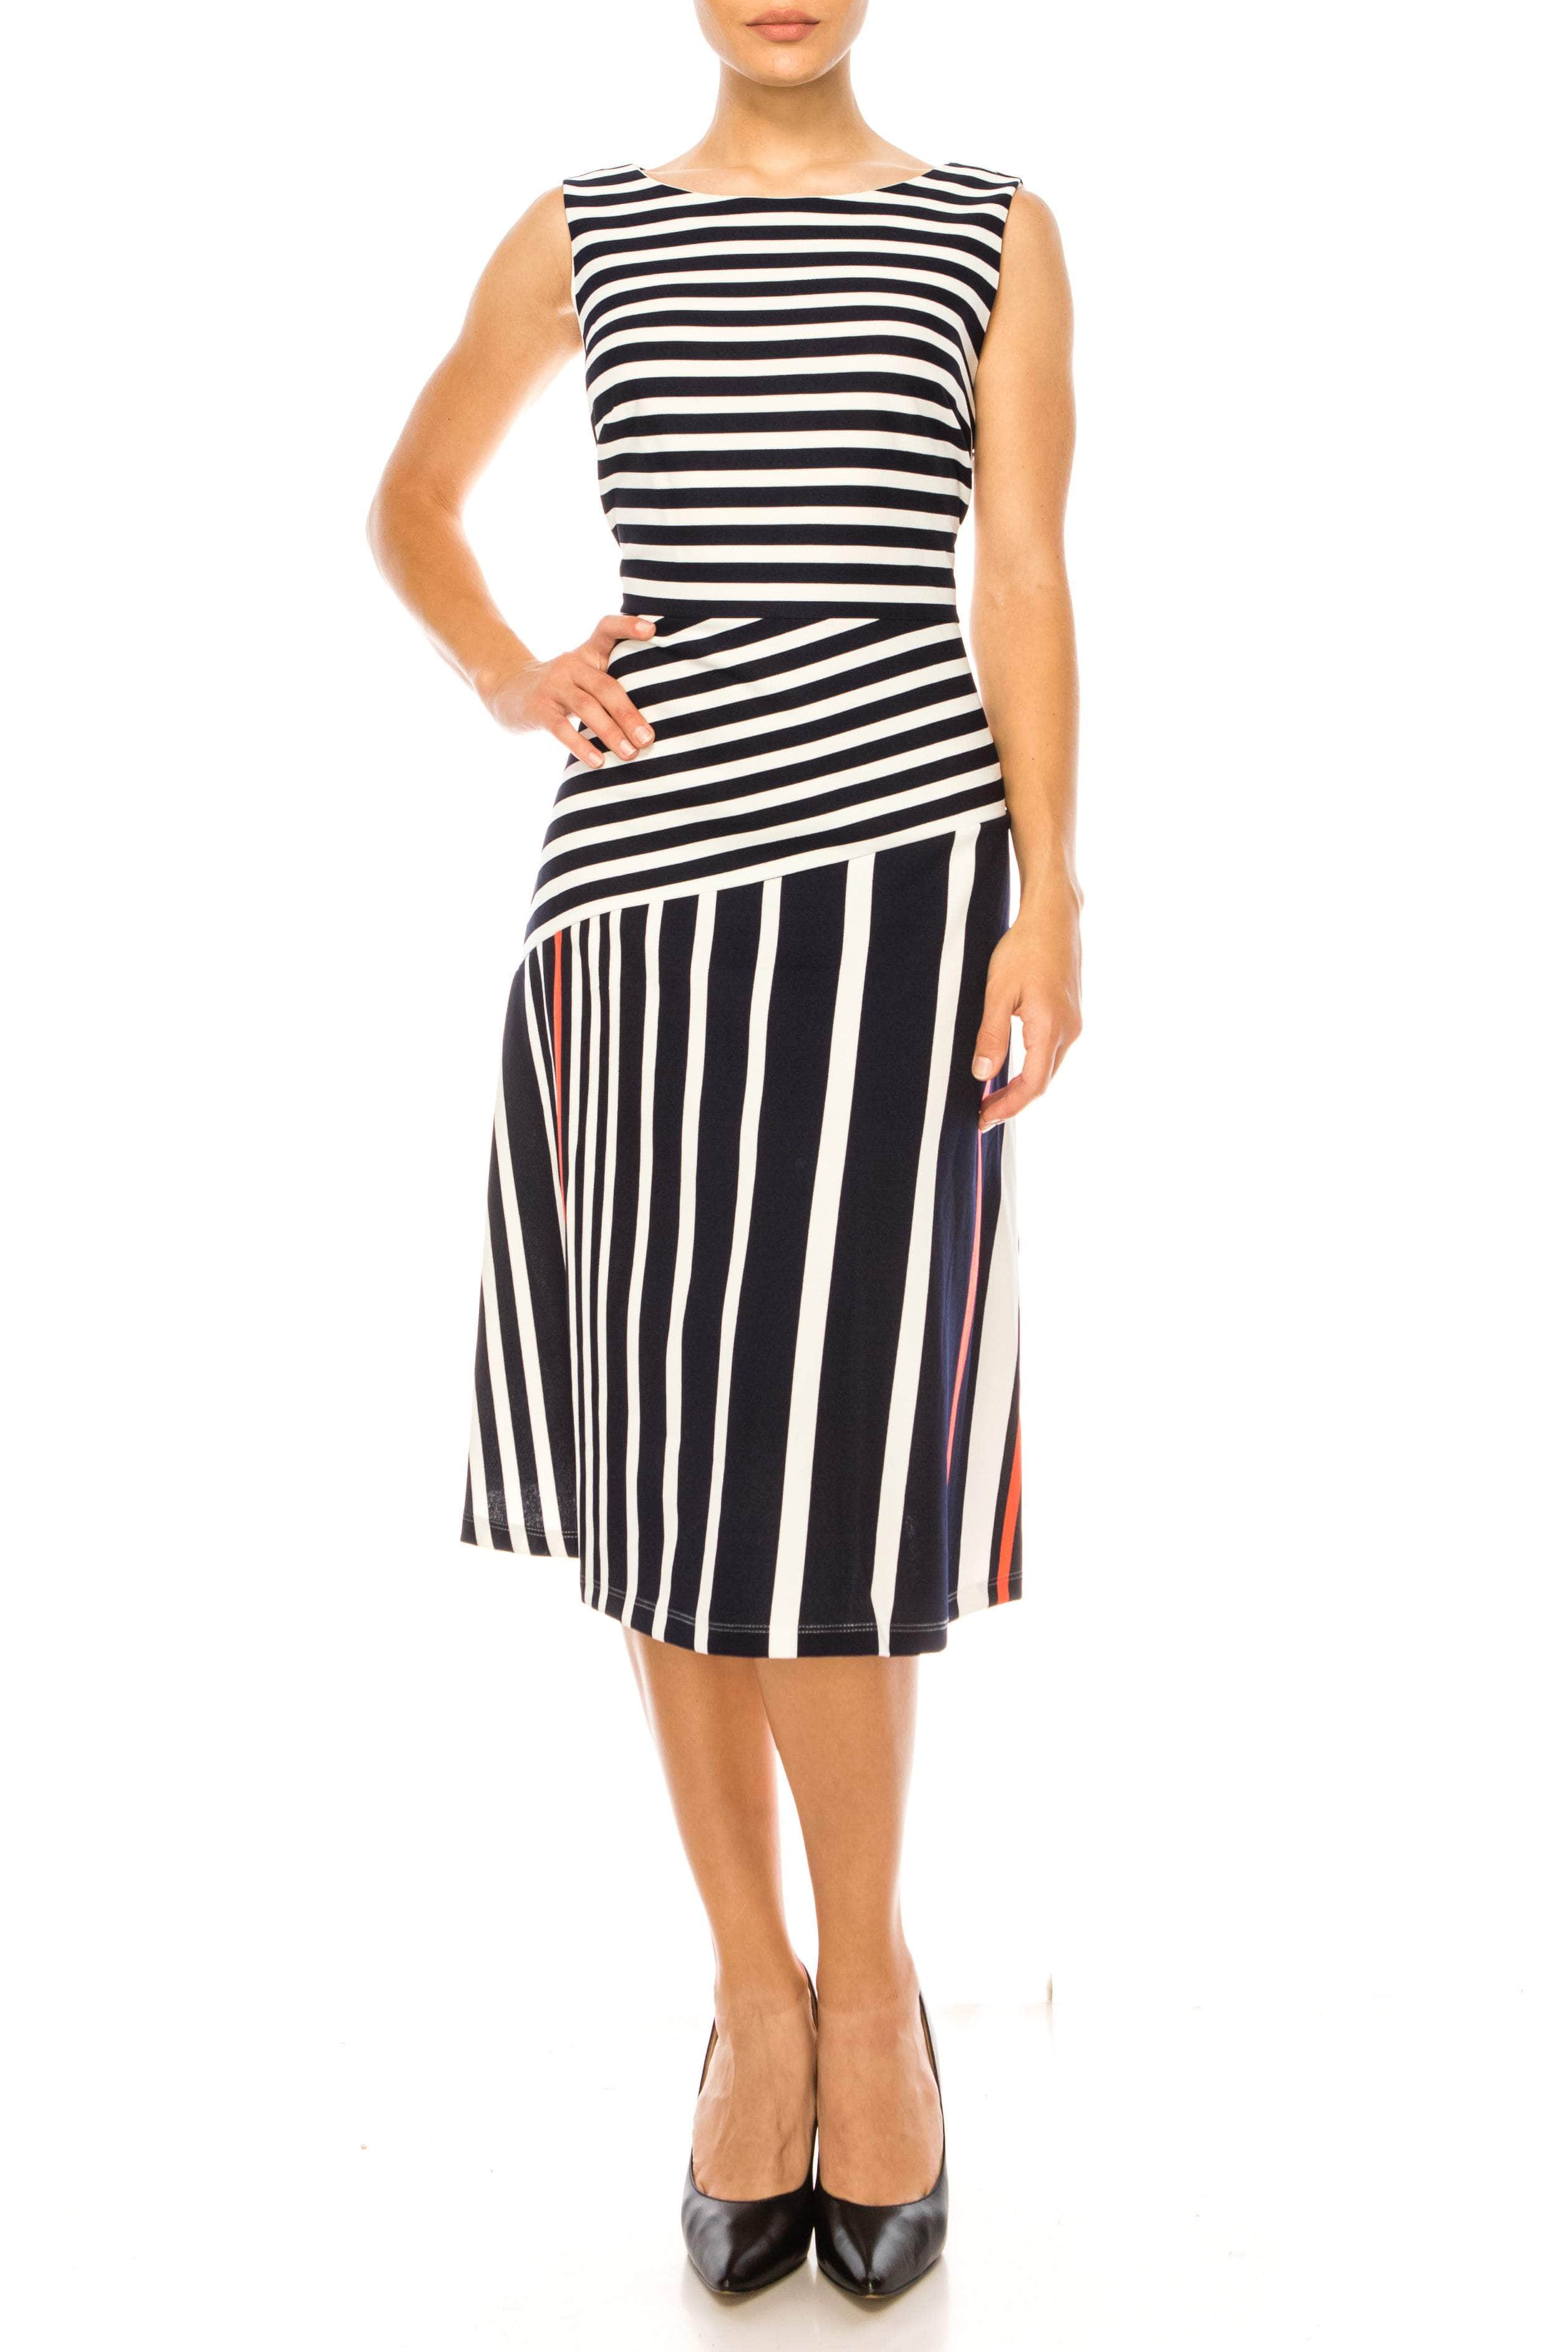 Image of ILE Clothing SCP1326 - Sleeveless Striped Dress